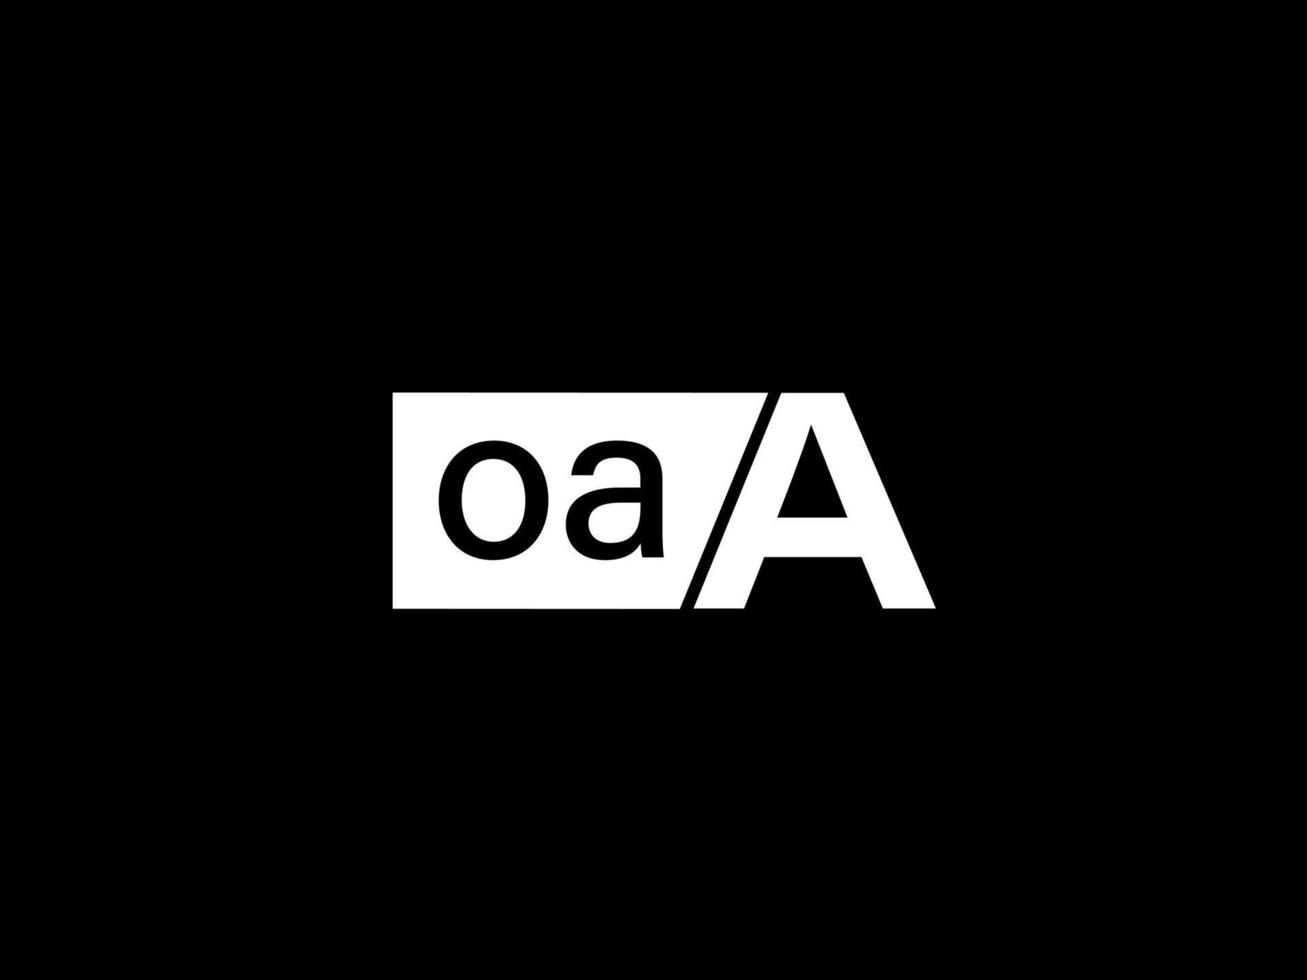 oaaa logo e grafica design vettore arte, icone isolato su nero sfondo